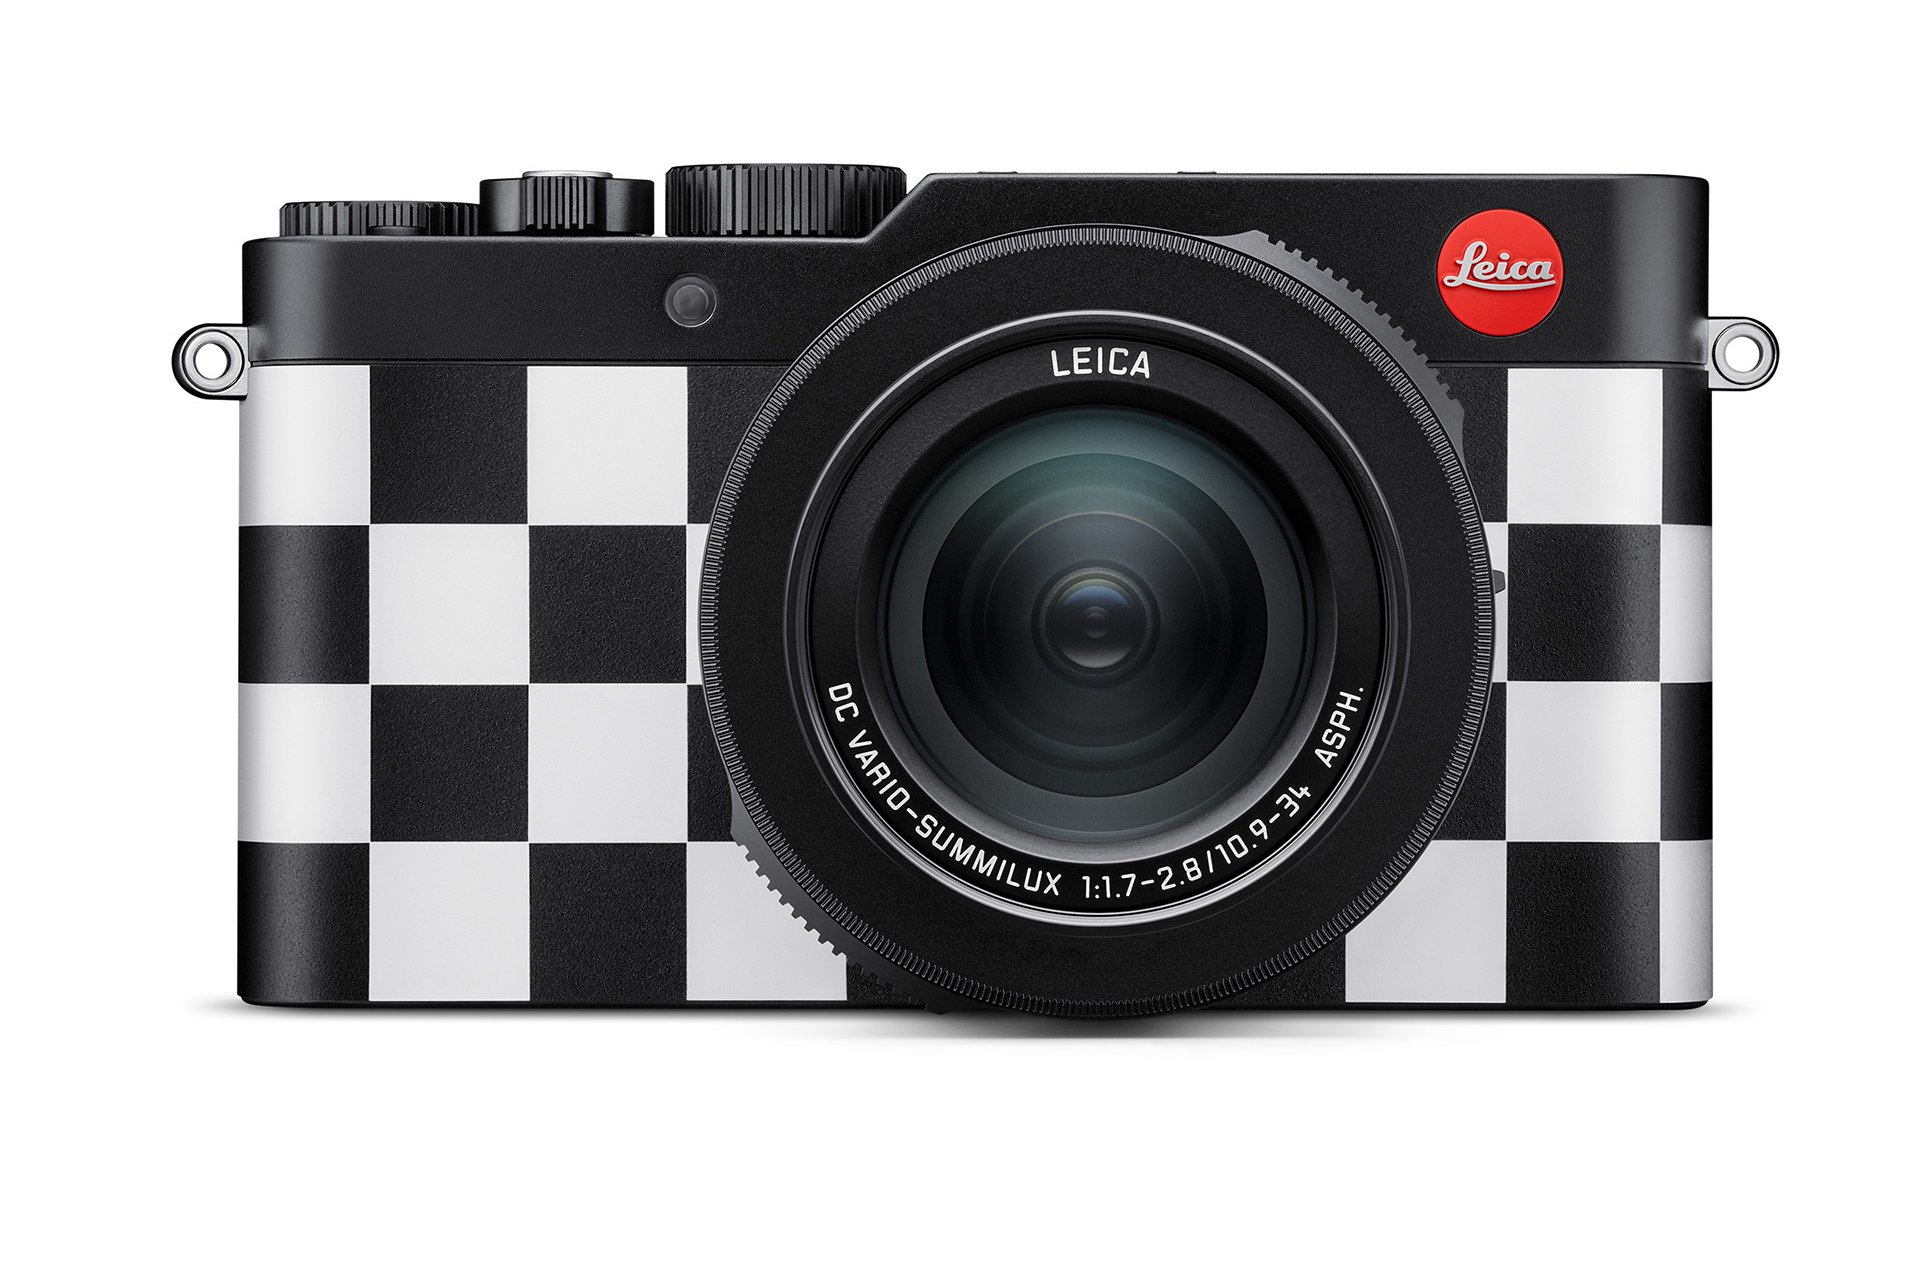 Leica представила эксклюзивную камеру в стиле Vans